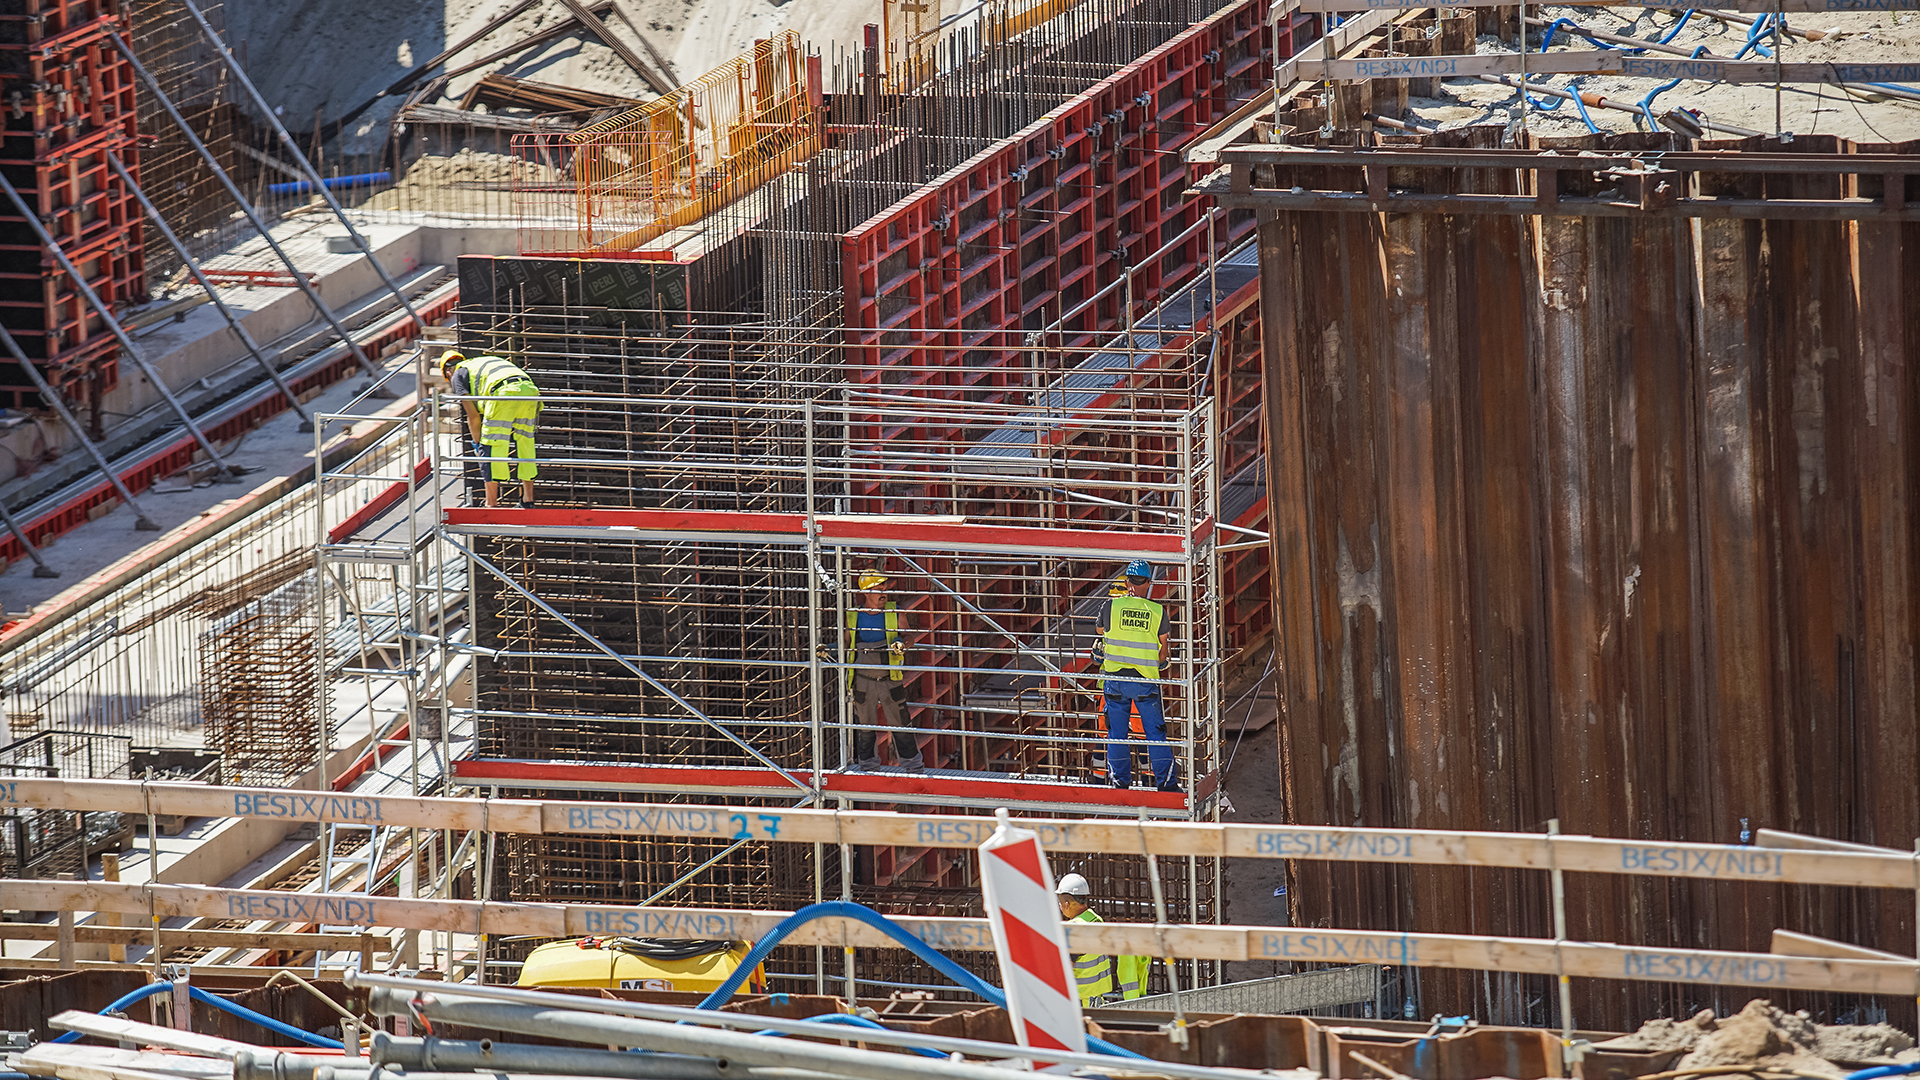 Arbeiter stehen auf dem Gerüst einer Baustelle in Nowy Swiat, Polen. | picture alliance / NurPhoto